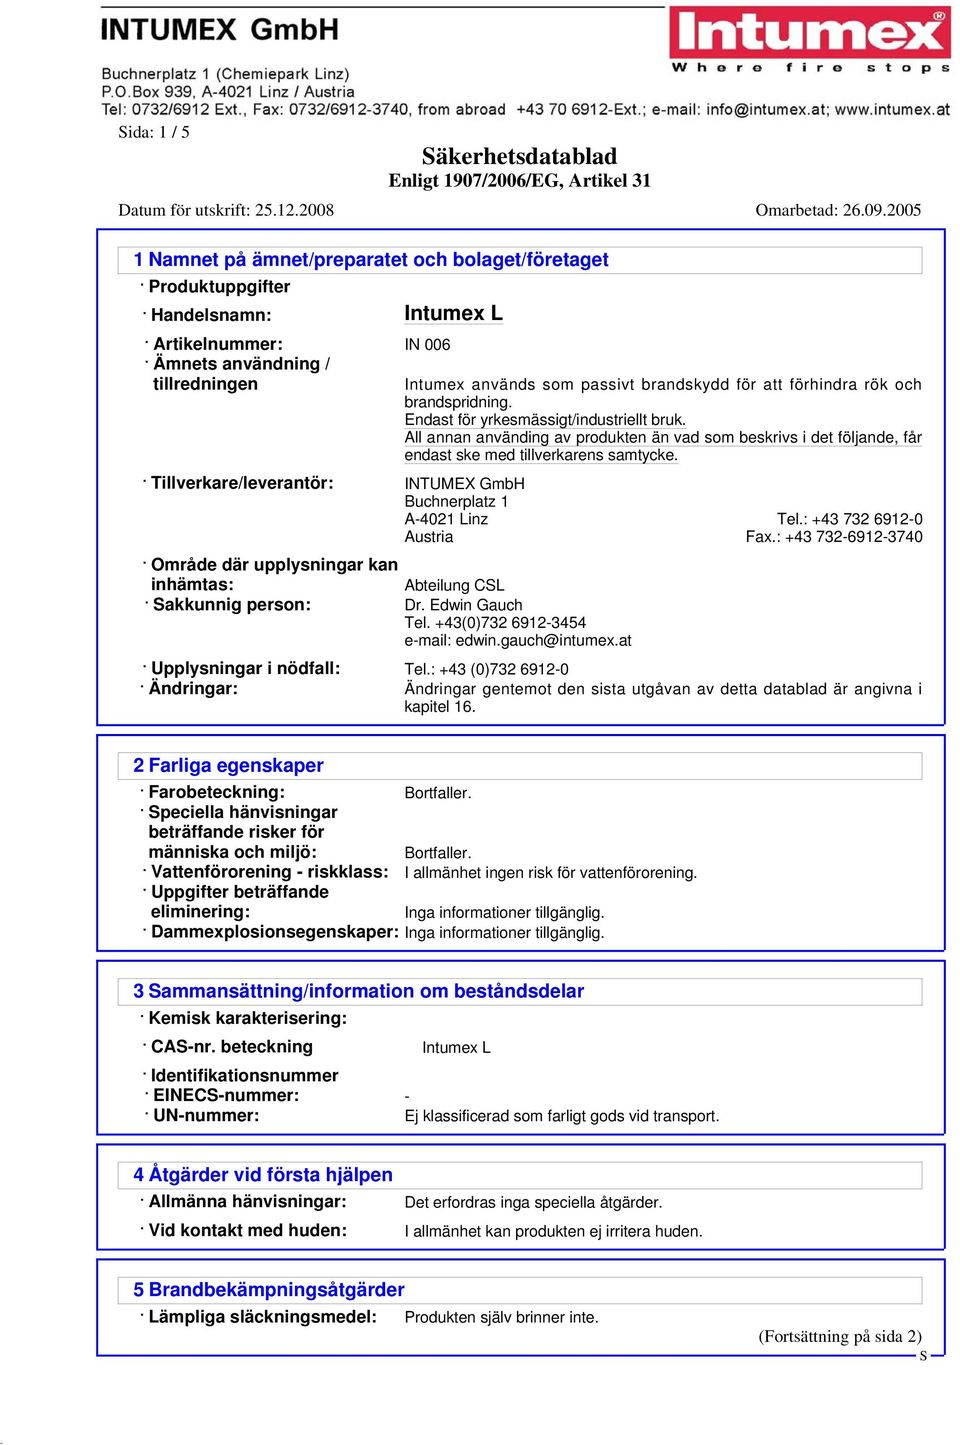 Tillverkare/leverantör: INTUMEX GmbH Buchnerplatz 1 A-4021 Linz Tel.: +43 732 6912-0 Austria Fax.: +43 732-6912-3740 Område där upplysningar kan inhämtas: Abteilung CL akkunnig person: Dr.